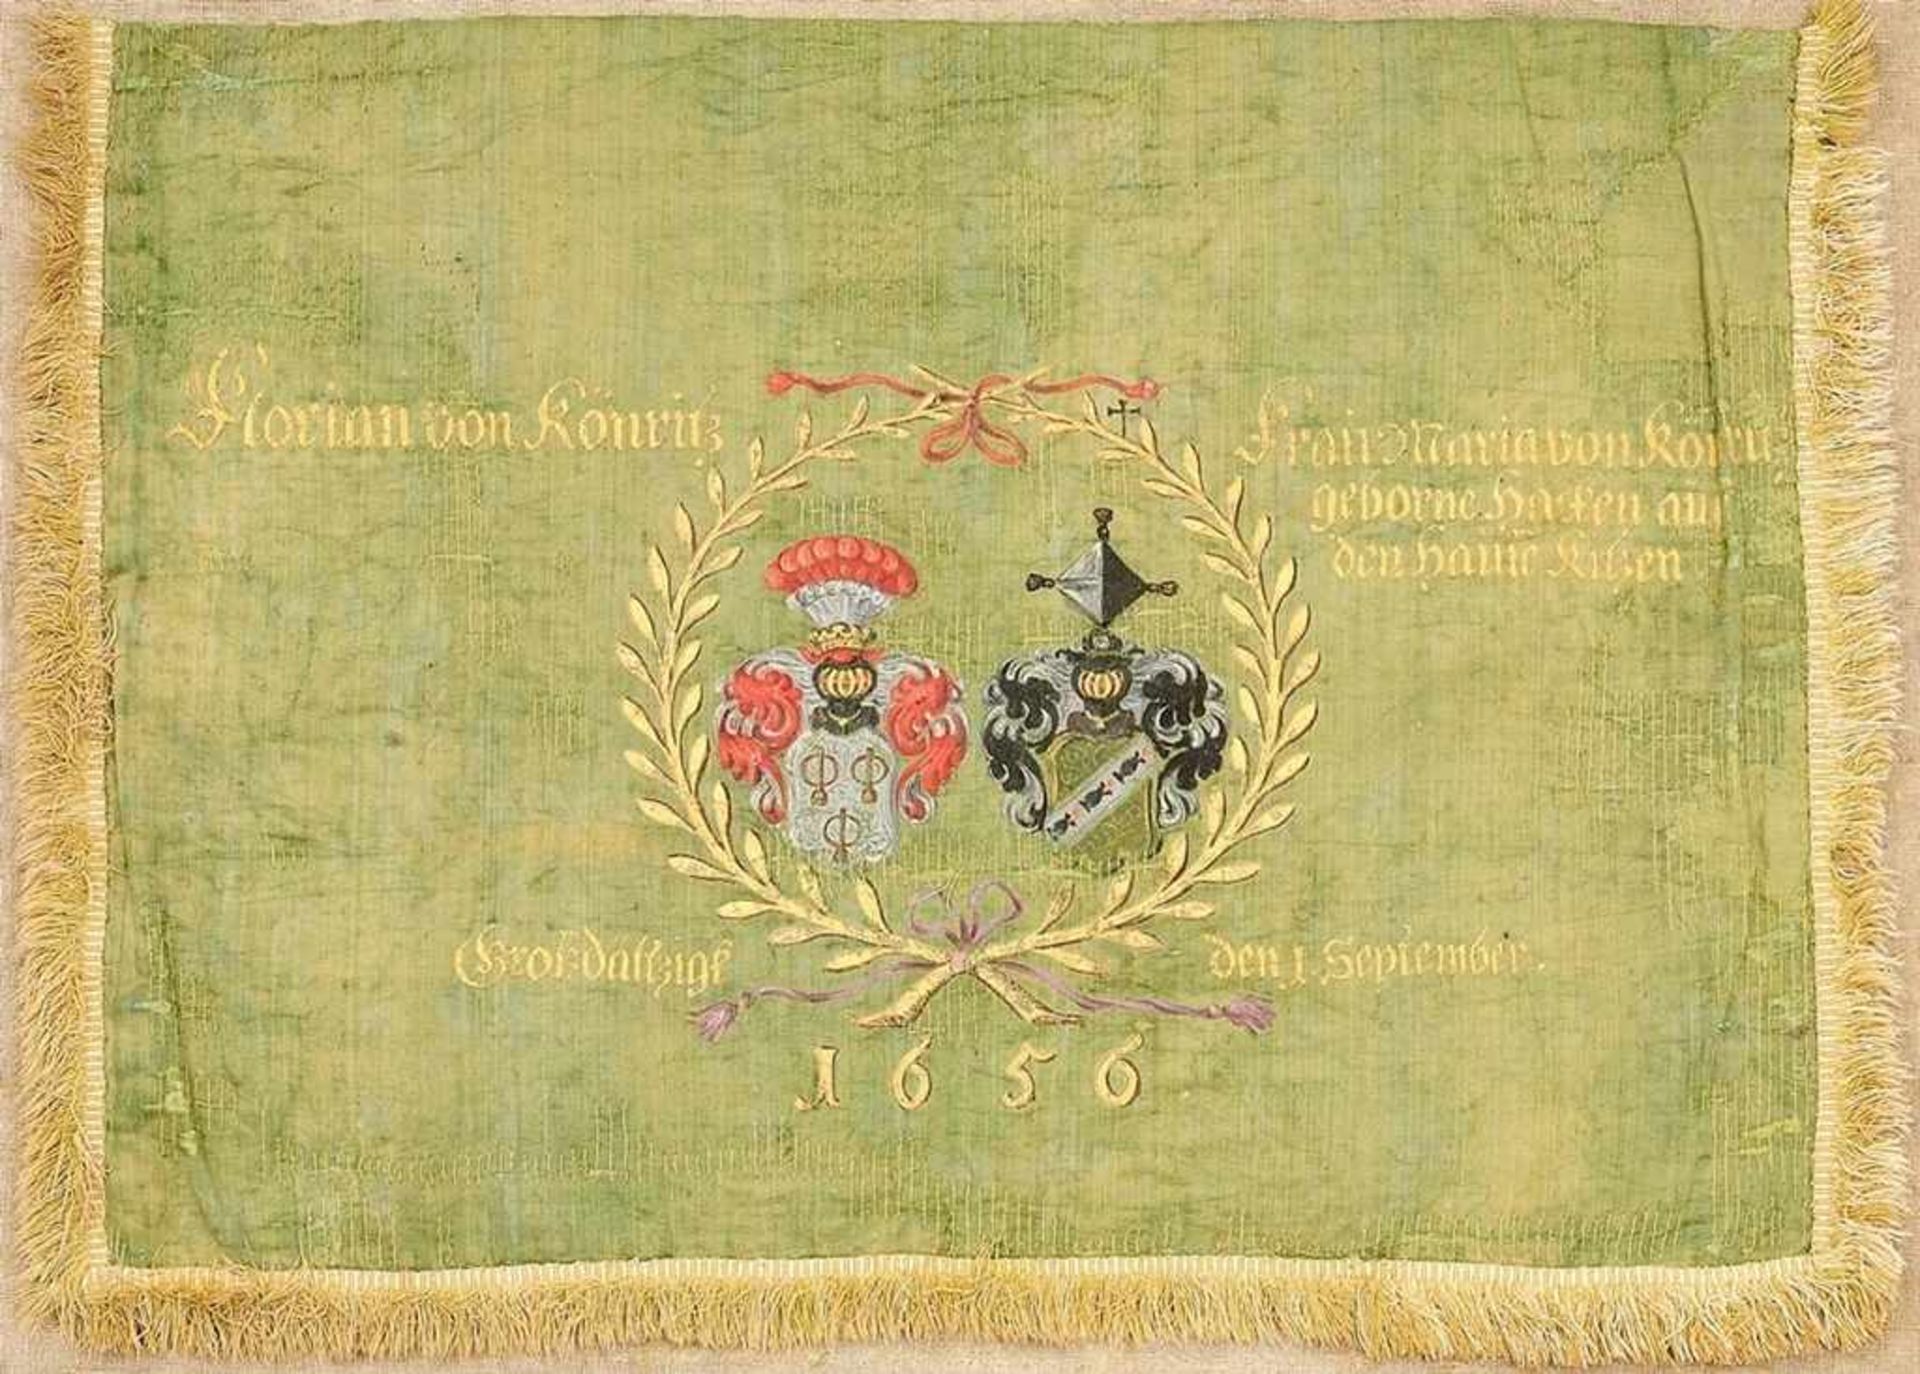 Hochzeits-Fanfaren-Fahne "Florian und Maria von Könritz" Grüner Seidenatlas, polychrom bemalt,